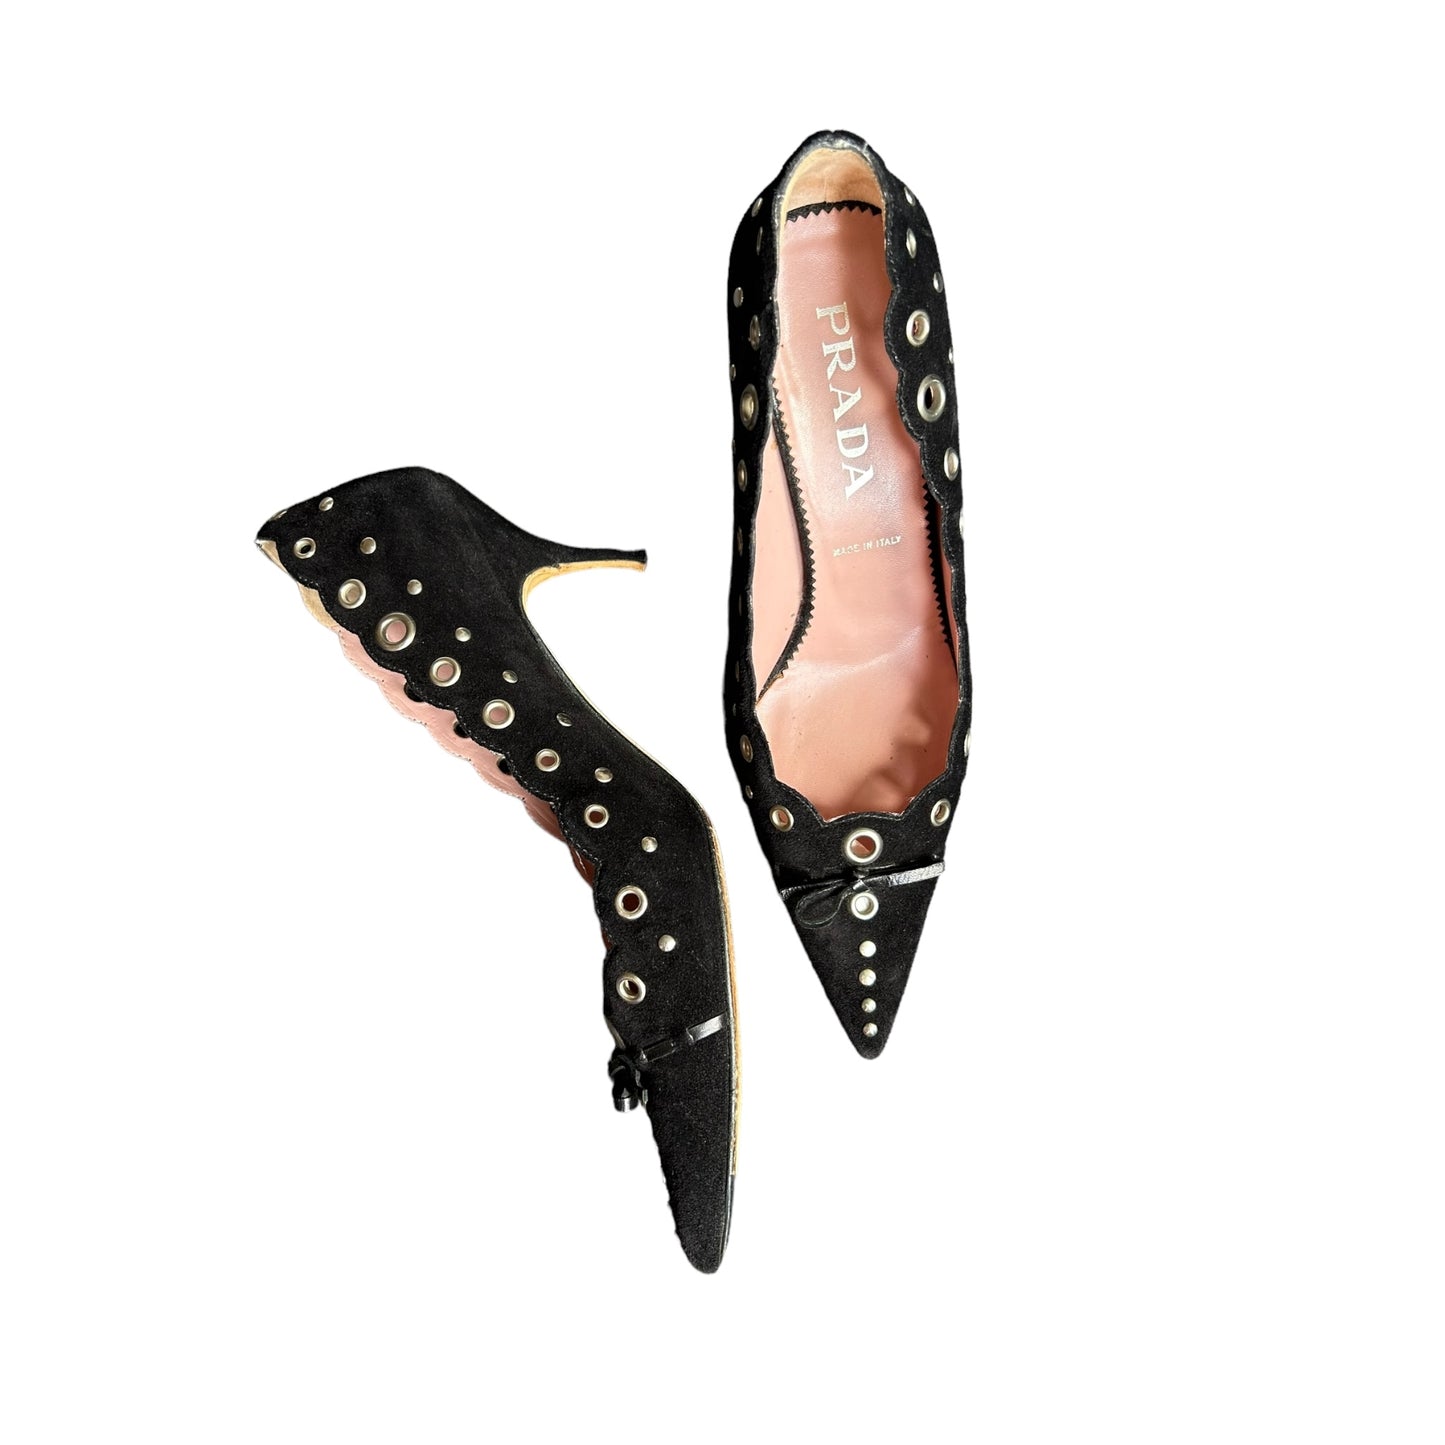 Vintage Prada suede kitten heels / 37